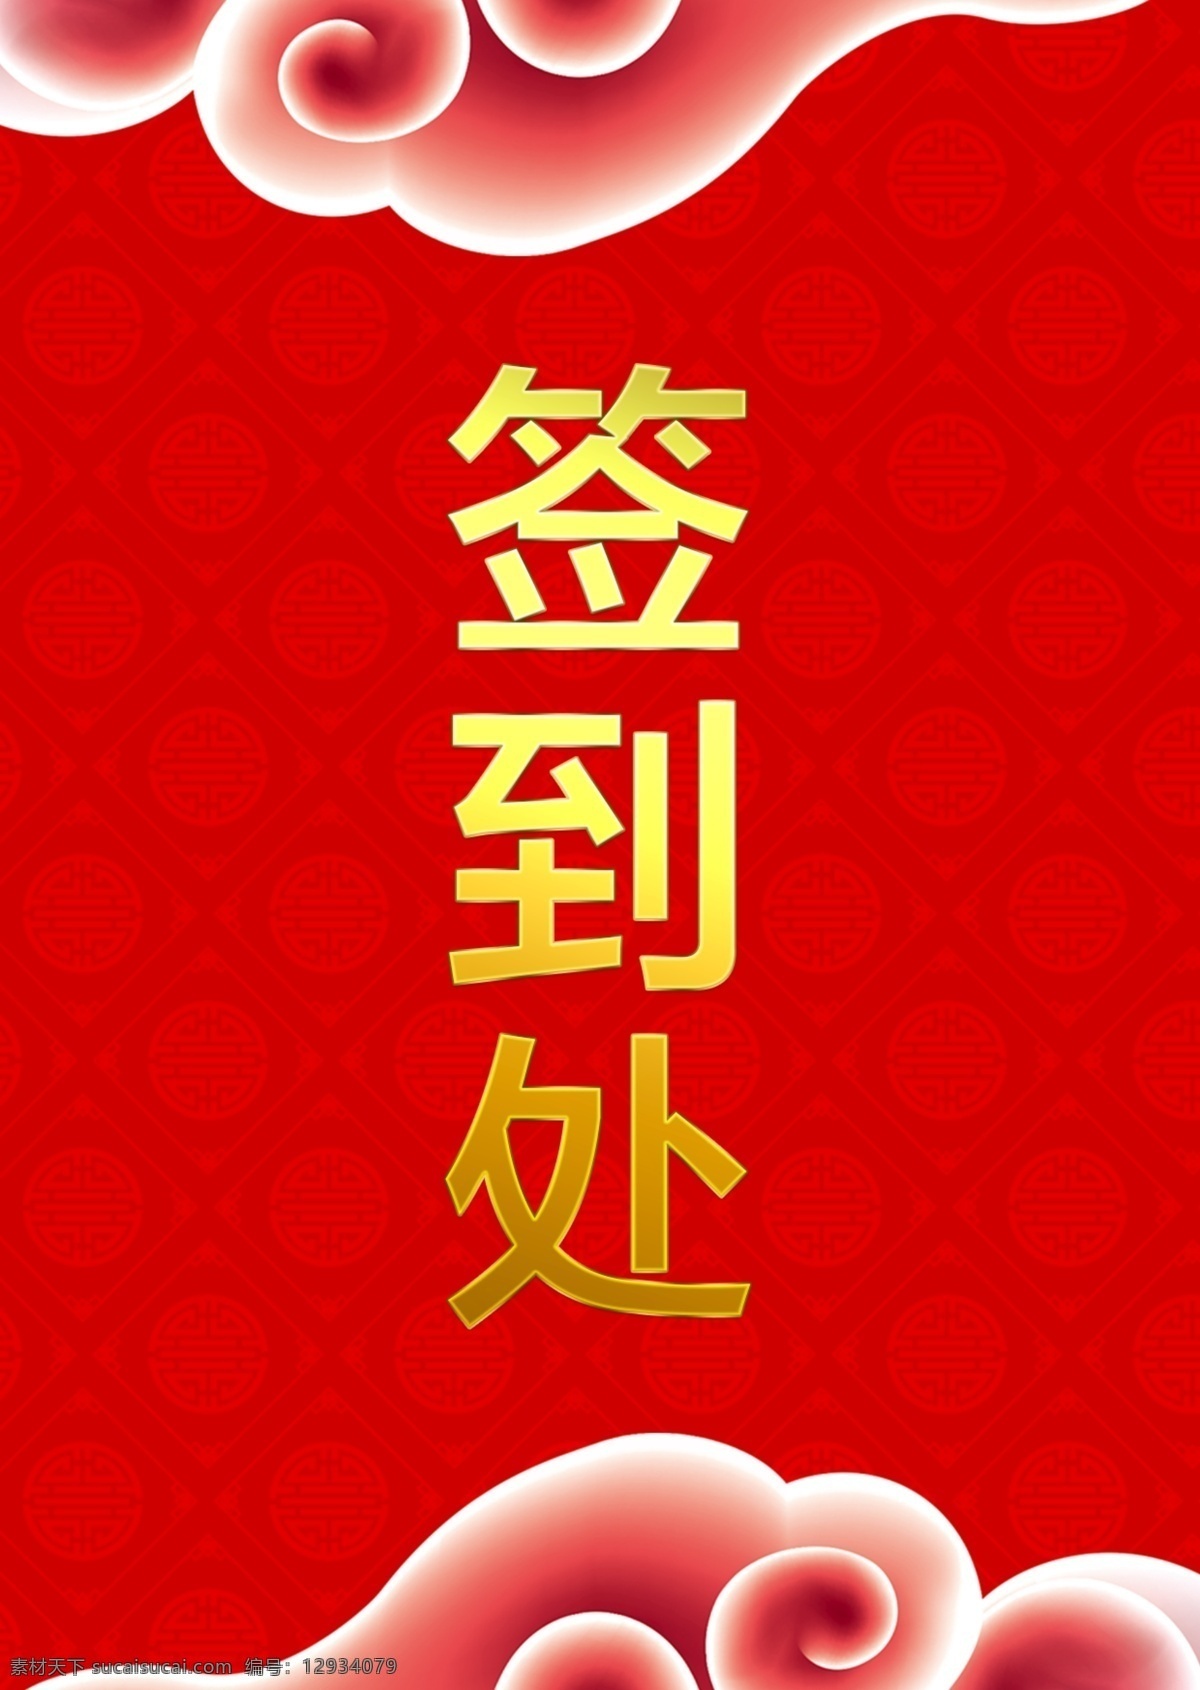 中国 喜庆 风 签到 桌 卡 中国喜庆风 活动 桌卡 签到处 红色 签到台桌卡